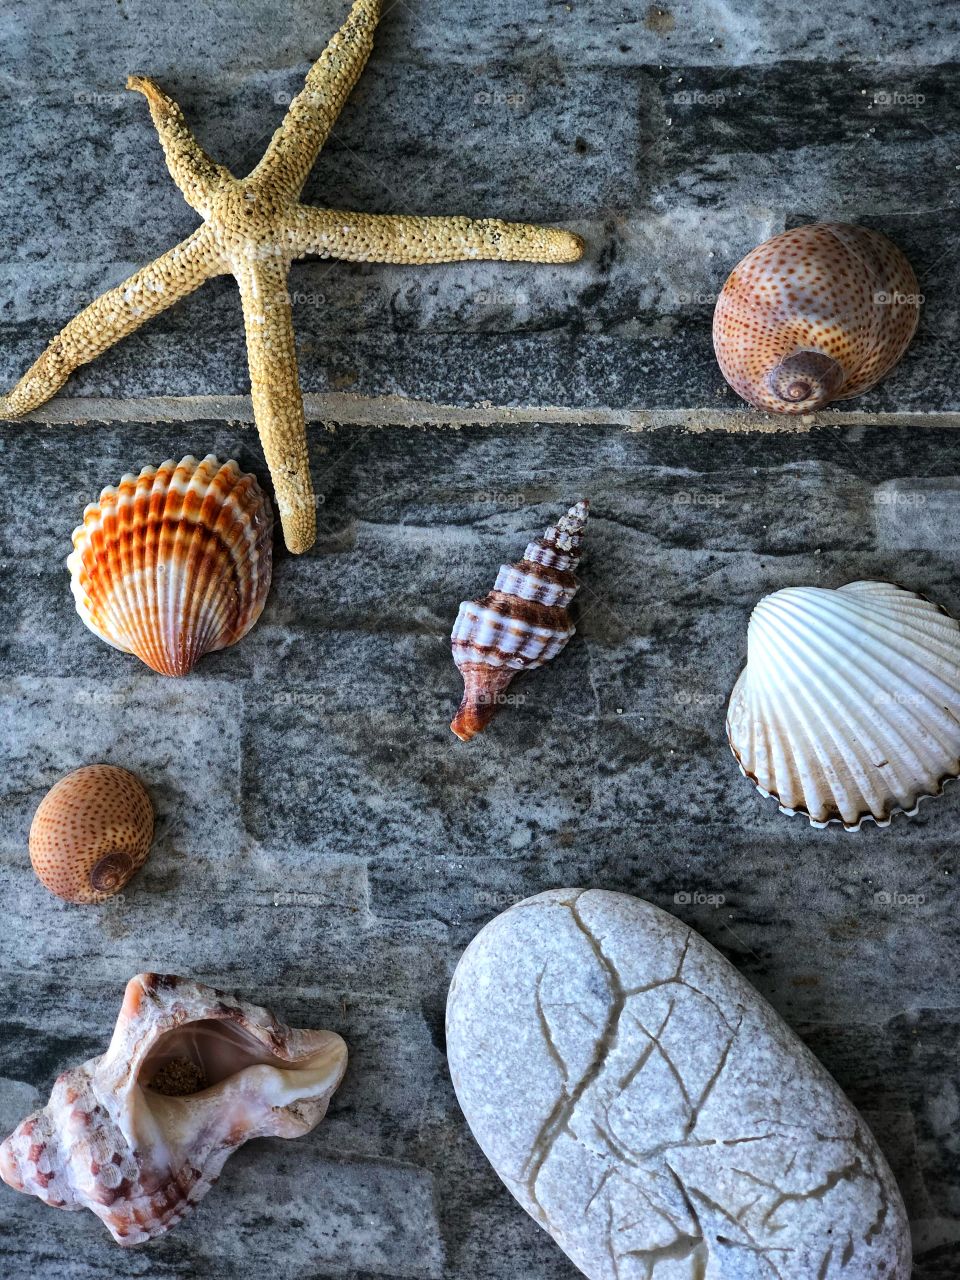 Shells 